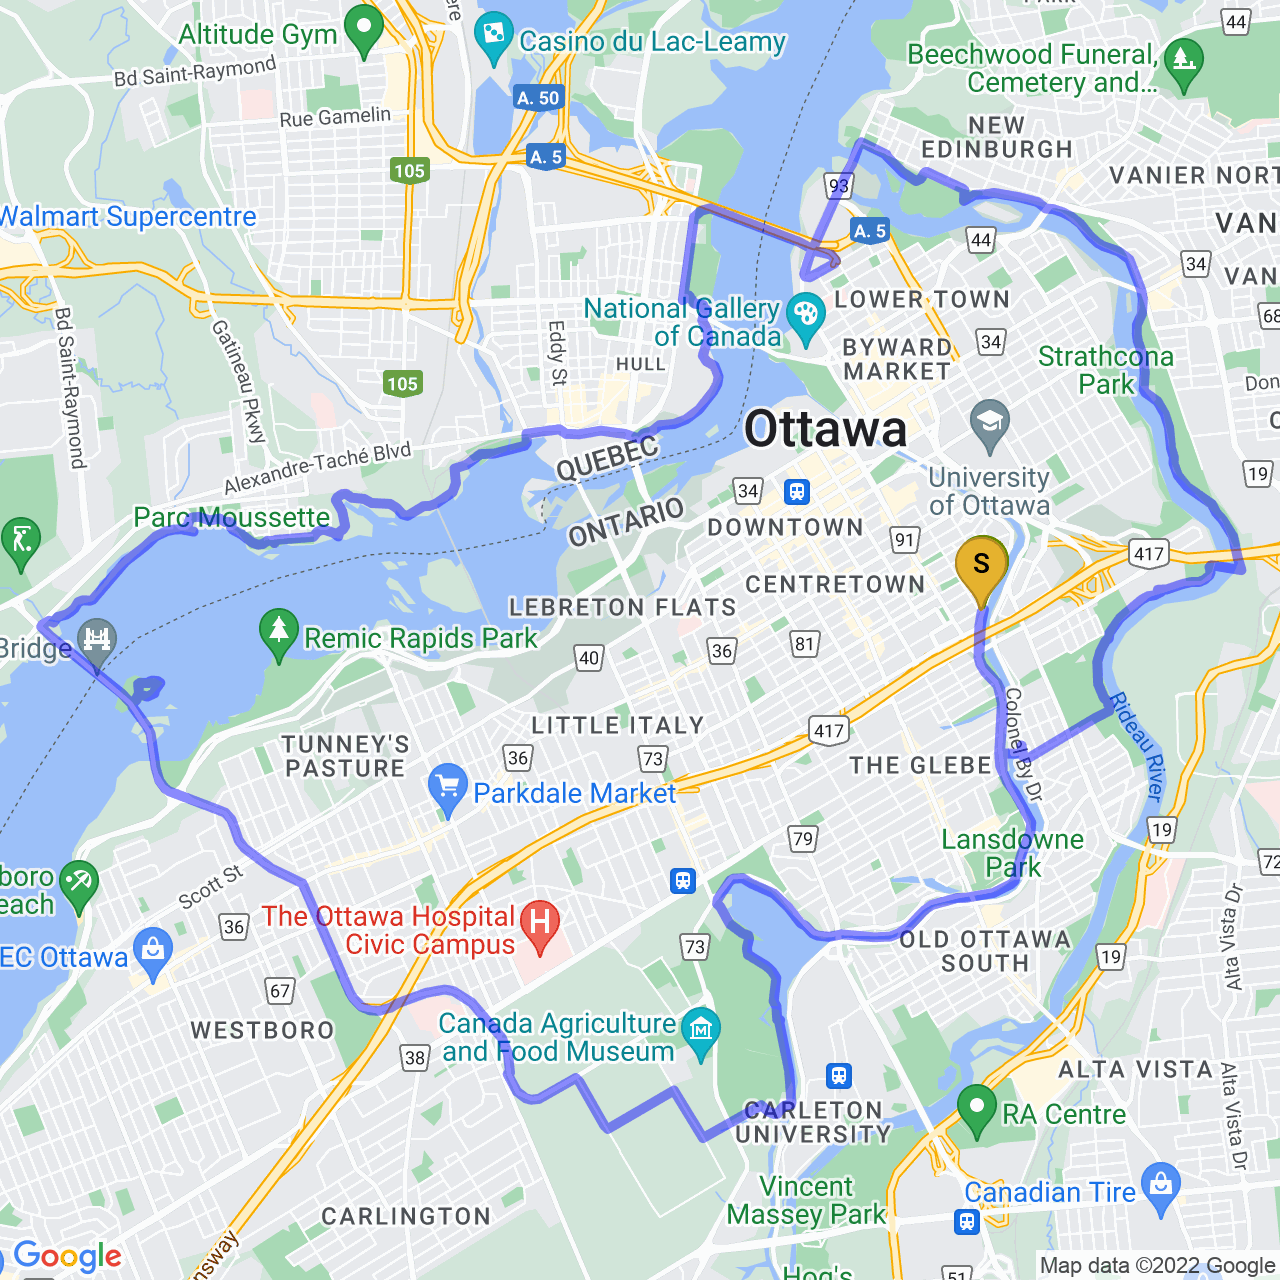 map of nice loop around Ottawa